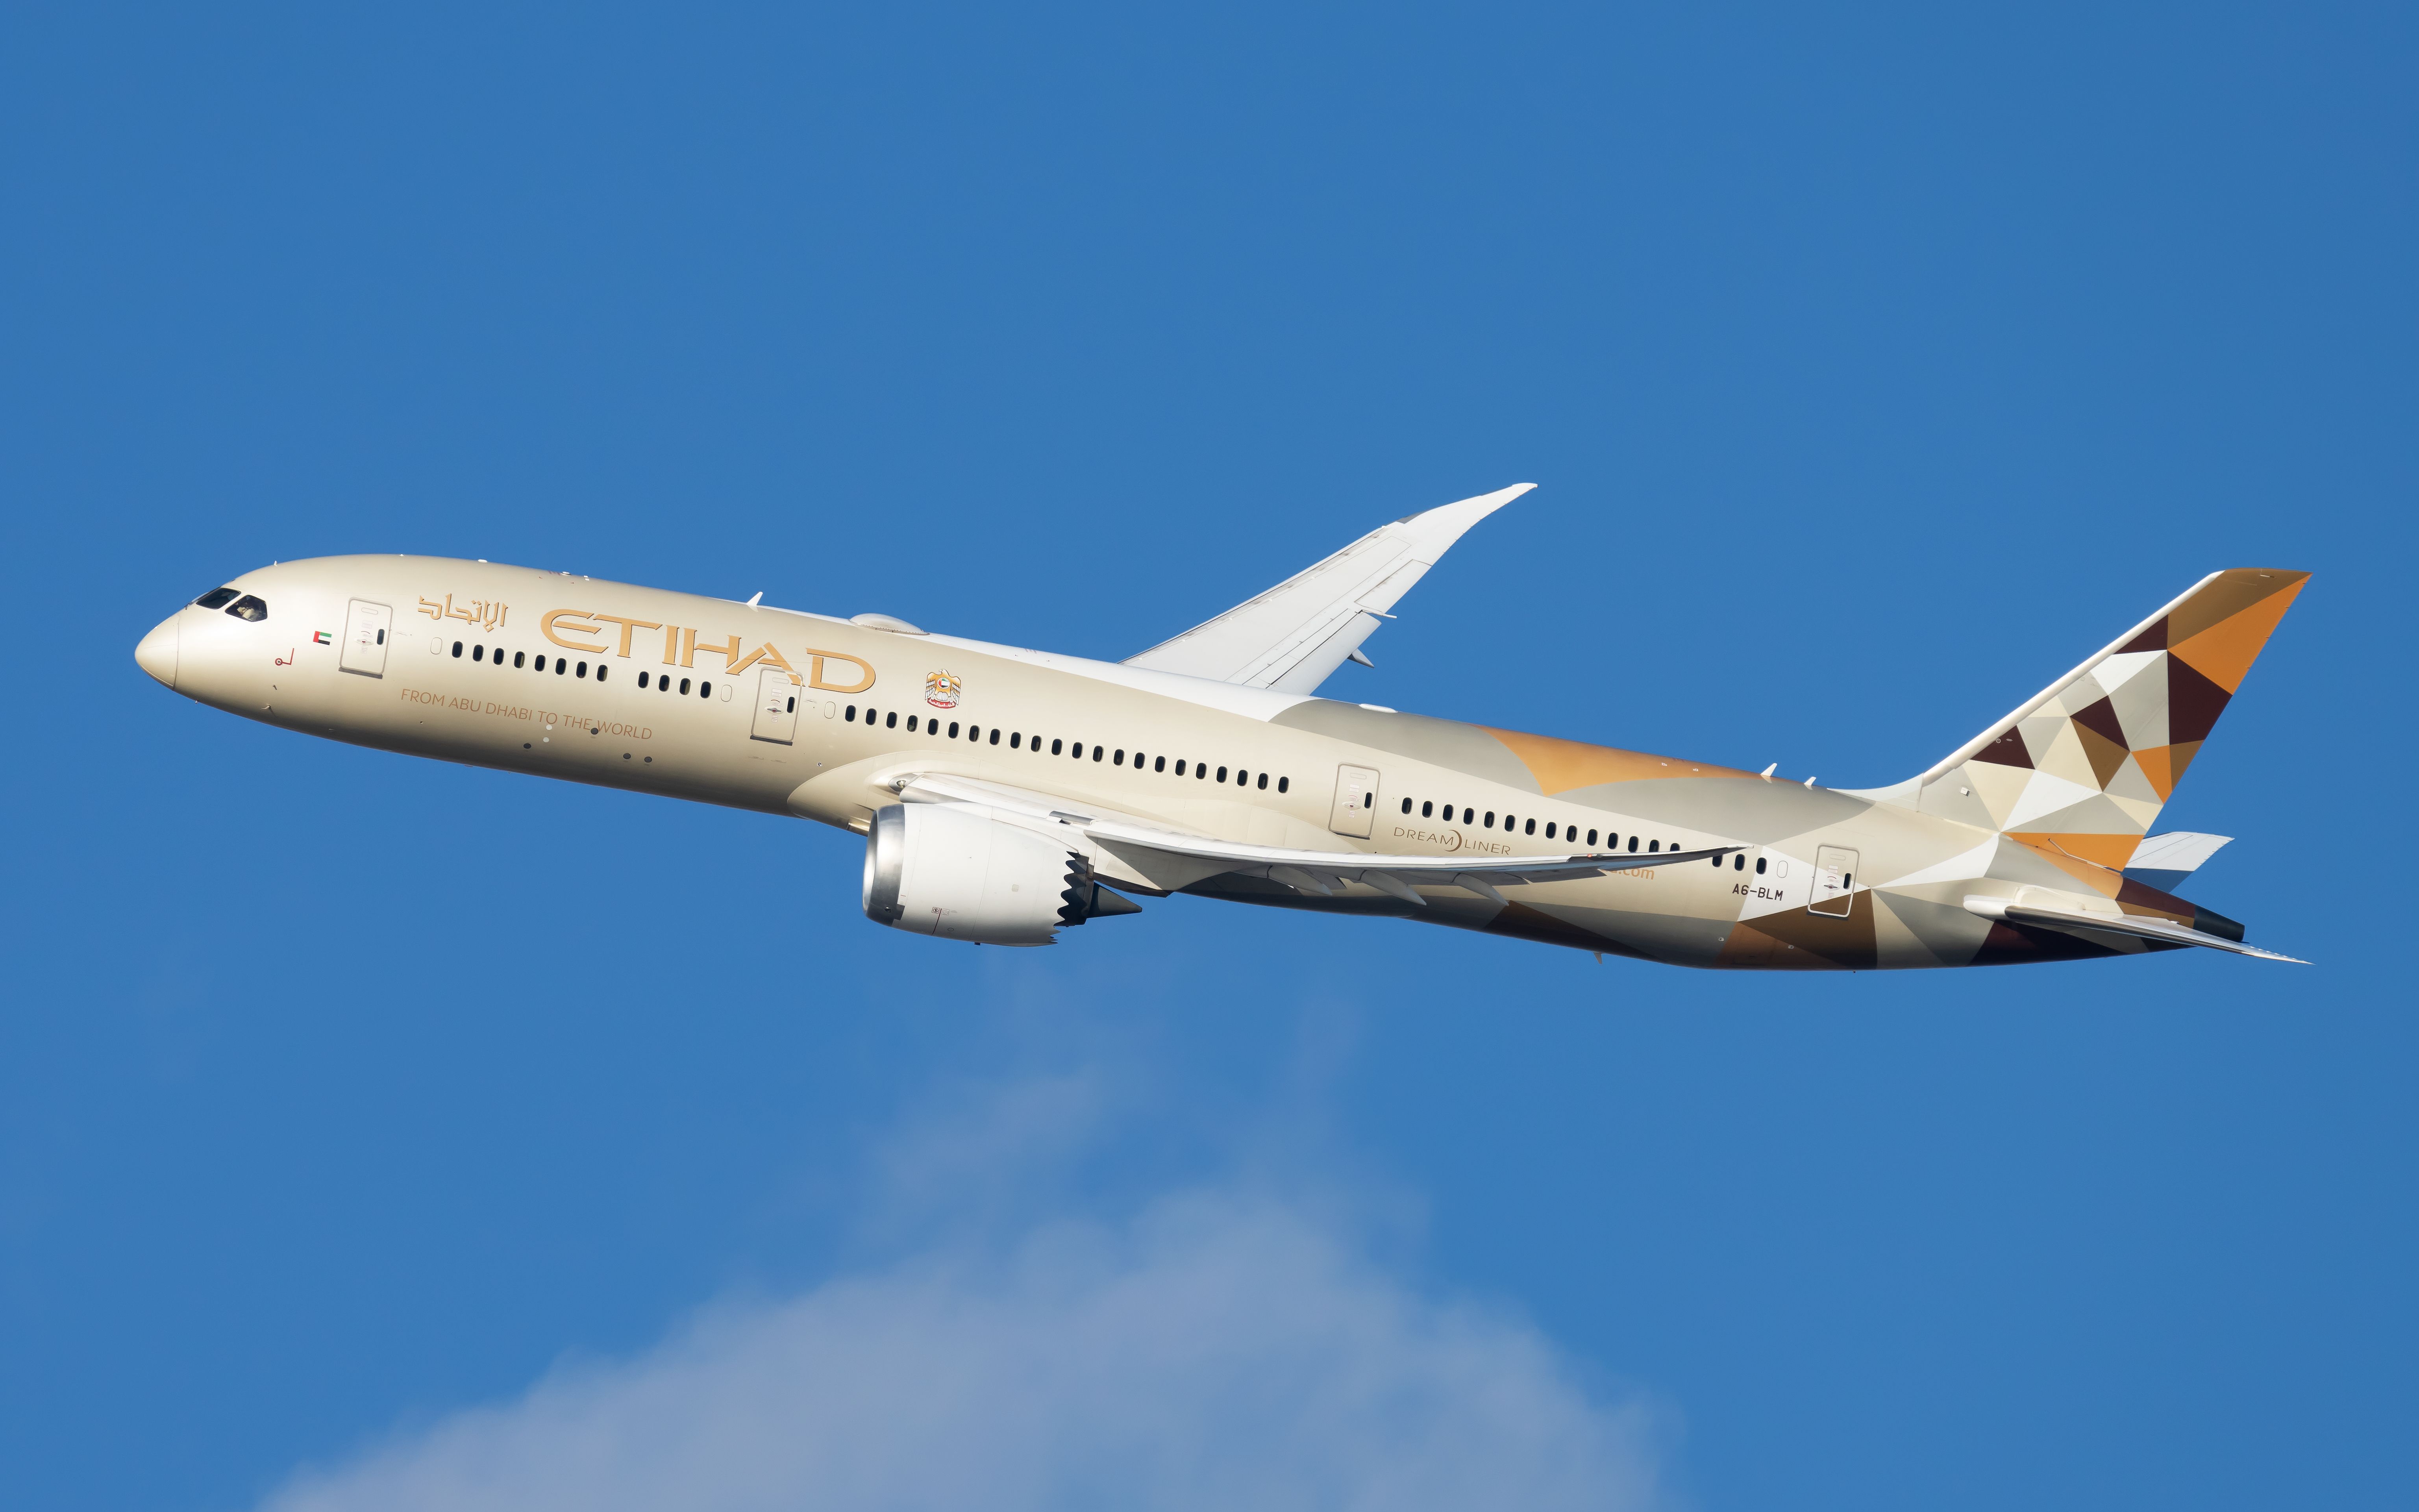 An Etihad Airways Boeing 787-9 flying in the sky.